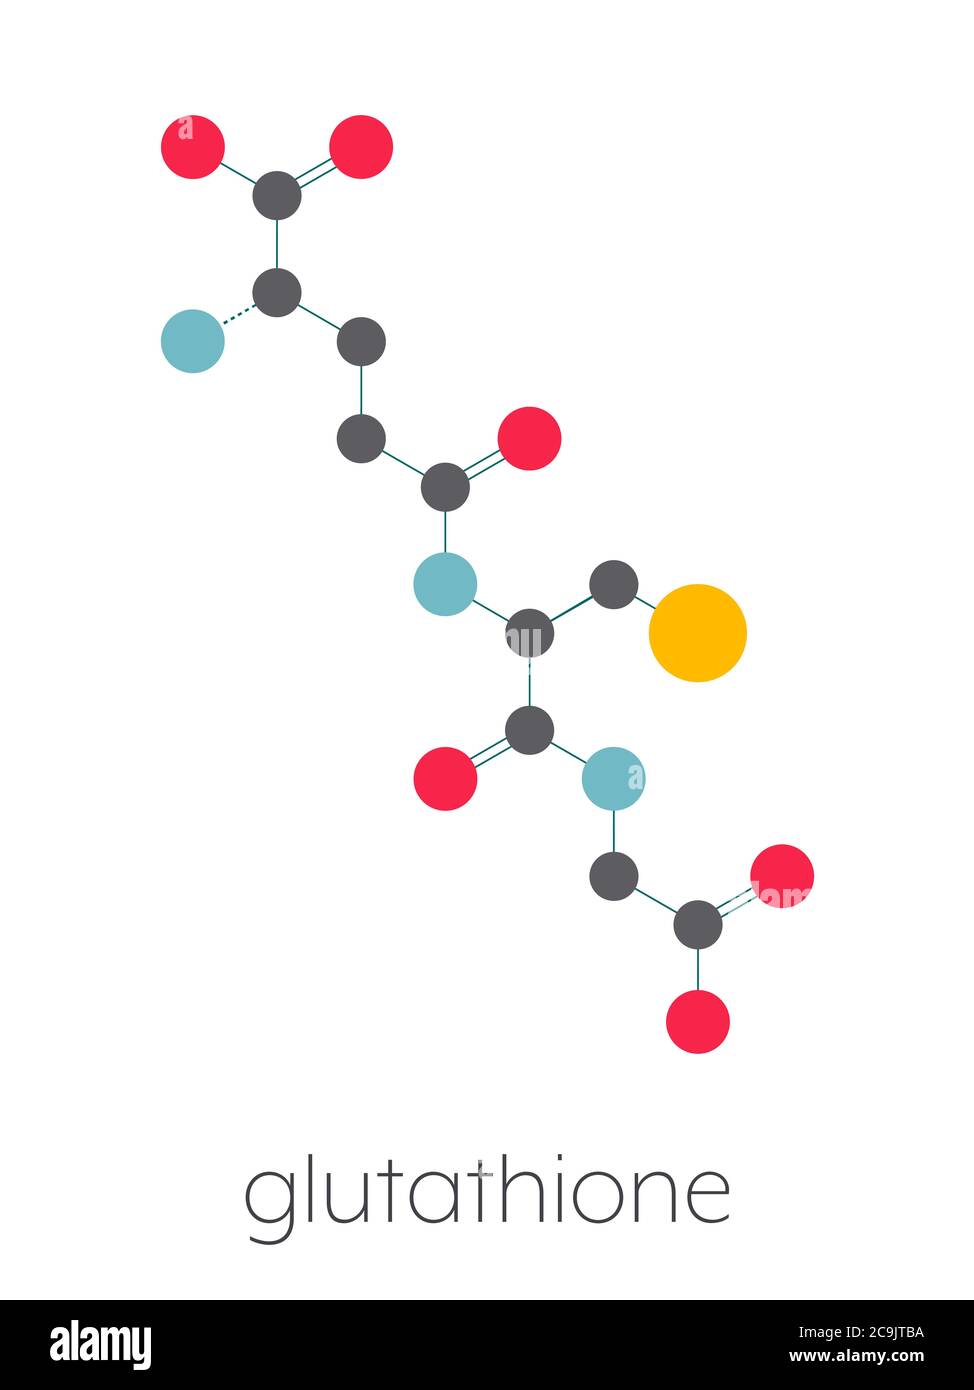 Molécule de glutathion (glutathion oxydé, GSSG). Formule squelettique stylisée (structure chimique). Les atomes sont affichés sous forme de cercles de couleur reliés par Banque D'Images